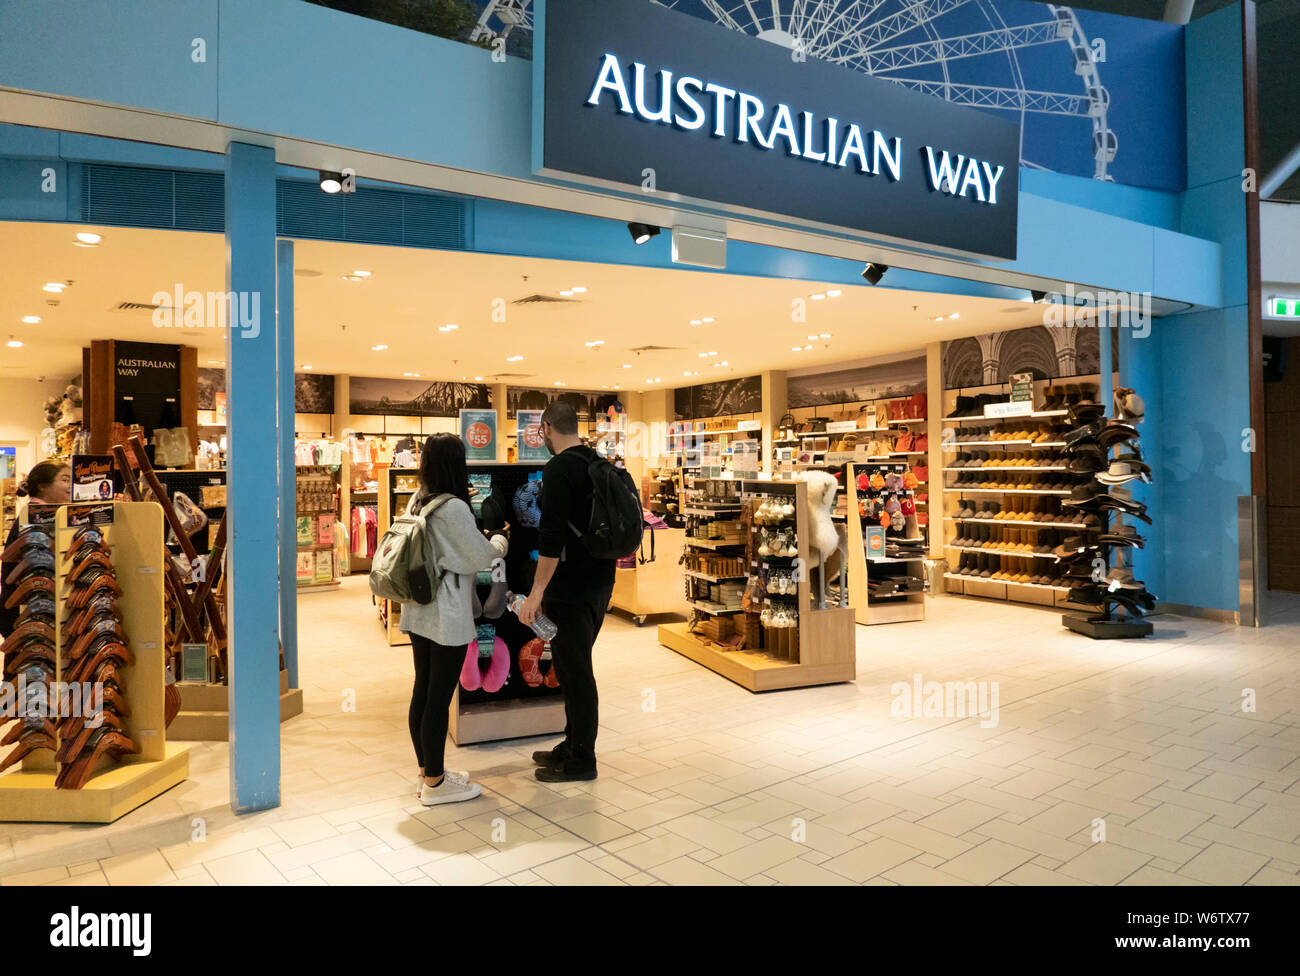 Die Reisenden einkaufen an der australischen Weise Souvenirs Shop am Flughafen Brisbane, internationalen Terminal, Queensland, Queensland, Australien Stockfoto